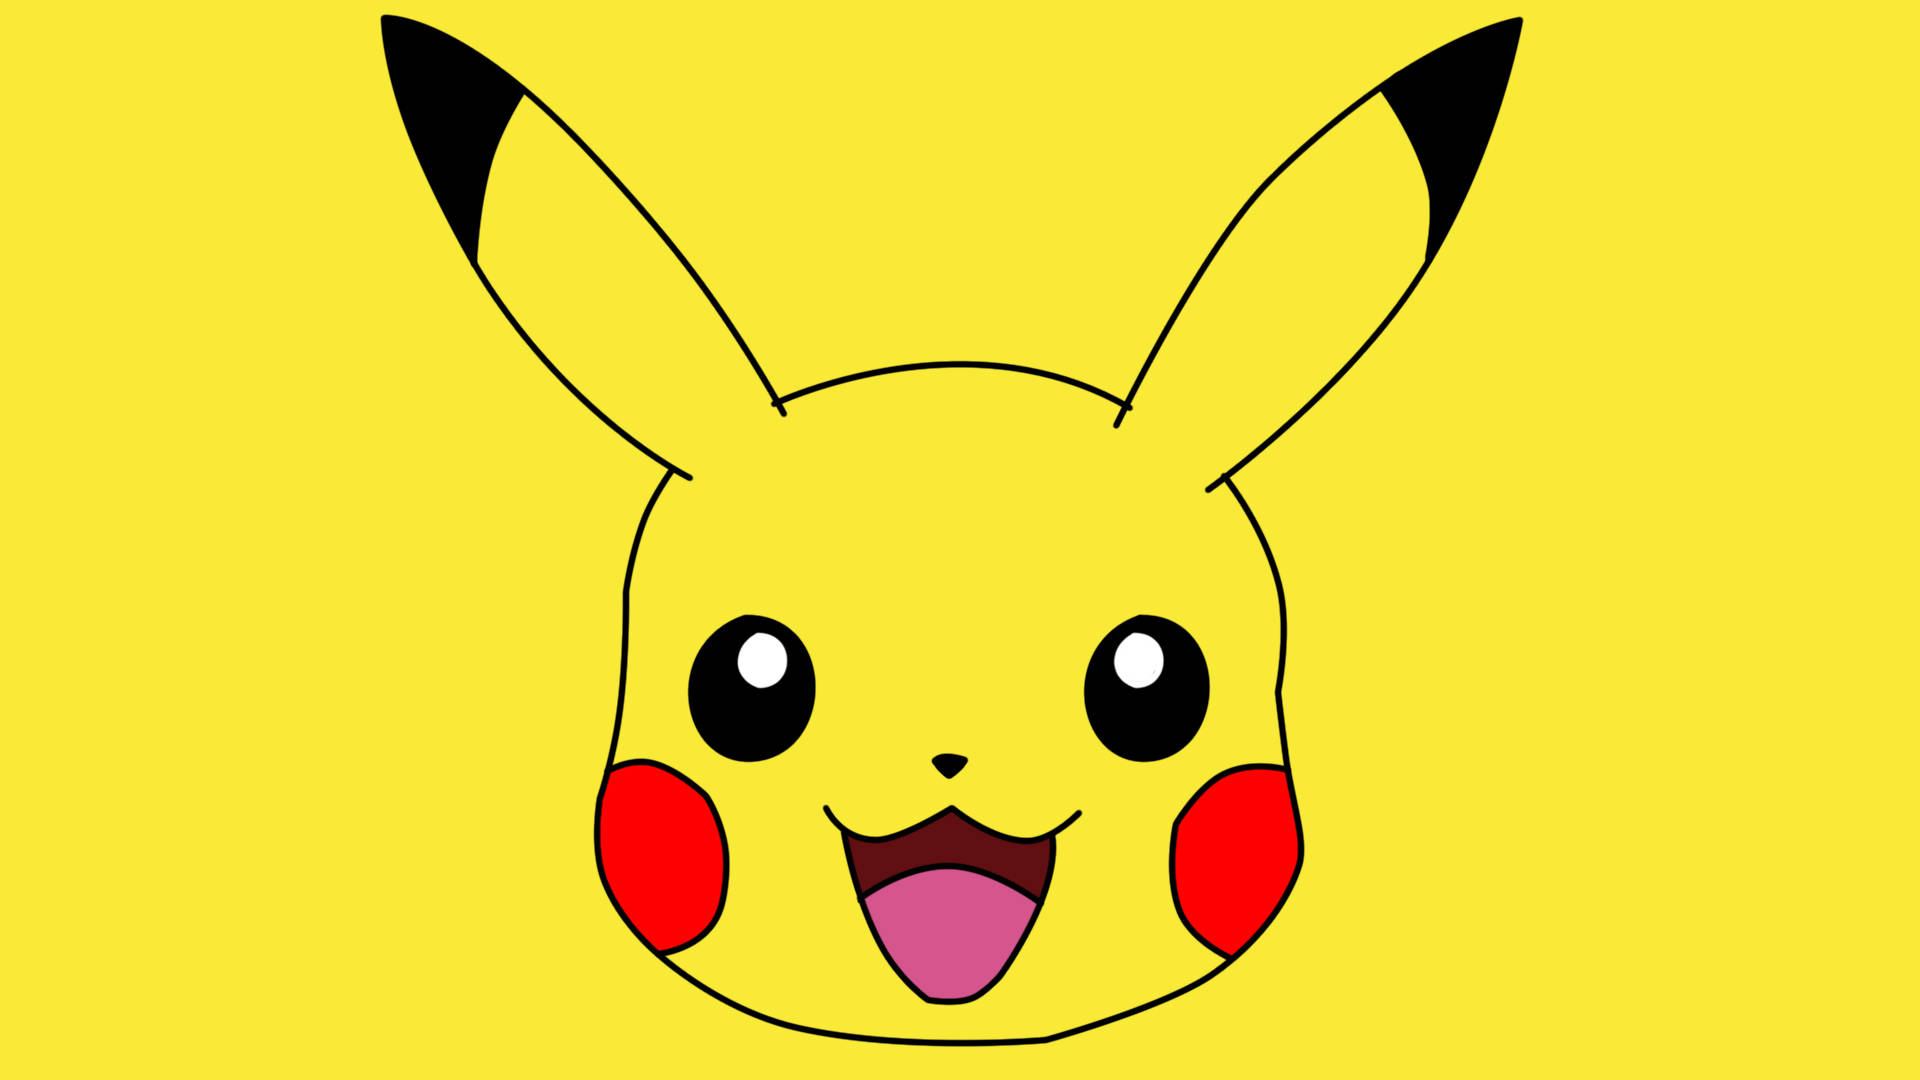 Pikachu là một trong những nhân vật đáng yêu nhất của thế giới anime và manga. Nếu bạn là một fan hâm mộ trung thành của Pikachu, hãy tải xuống những hình nền đầy đủ màu sắc, dễ thương và đáng yêu của chú ấy tại Cute Pikachu wallpaper download Vietnam. Bạn sẽ không muốn bỏ qua cơ hội này để có được bộ sưu tập hình nền xuất sắc của Pikachu!